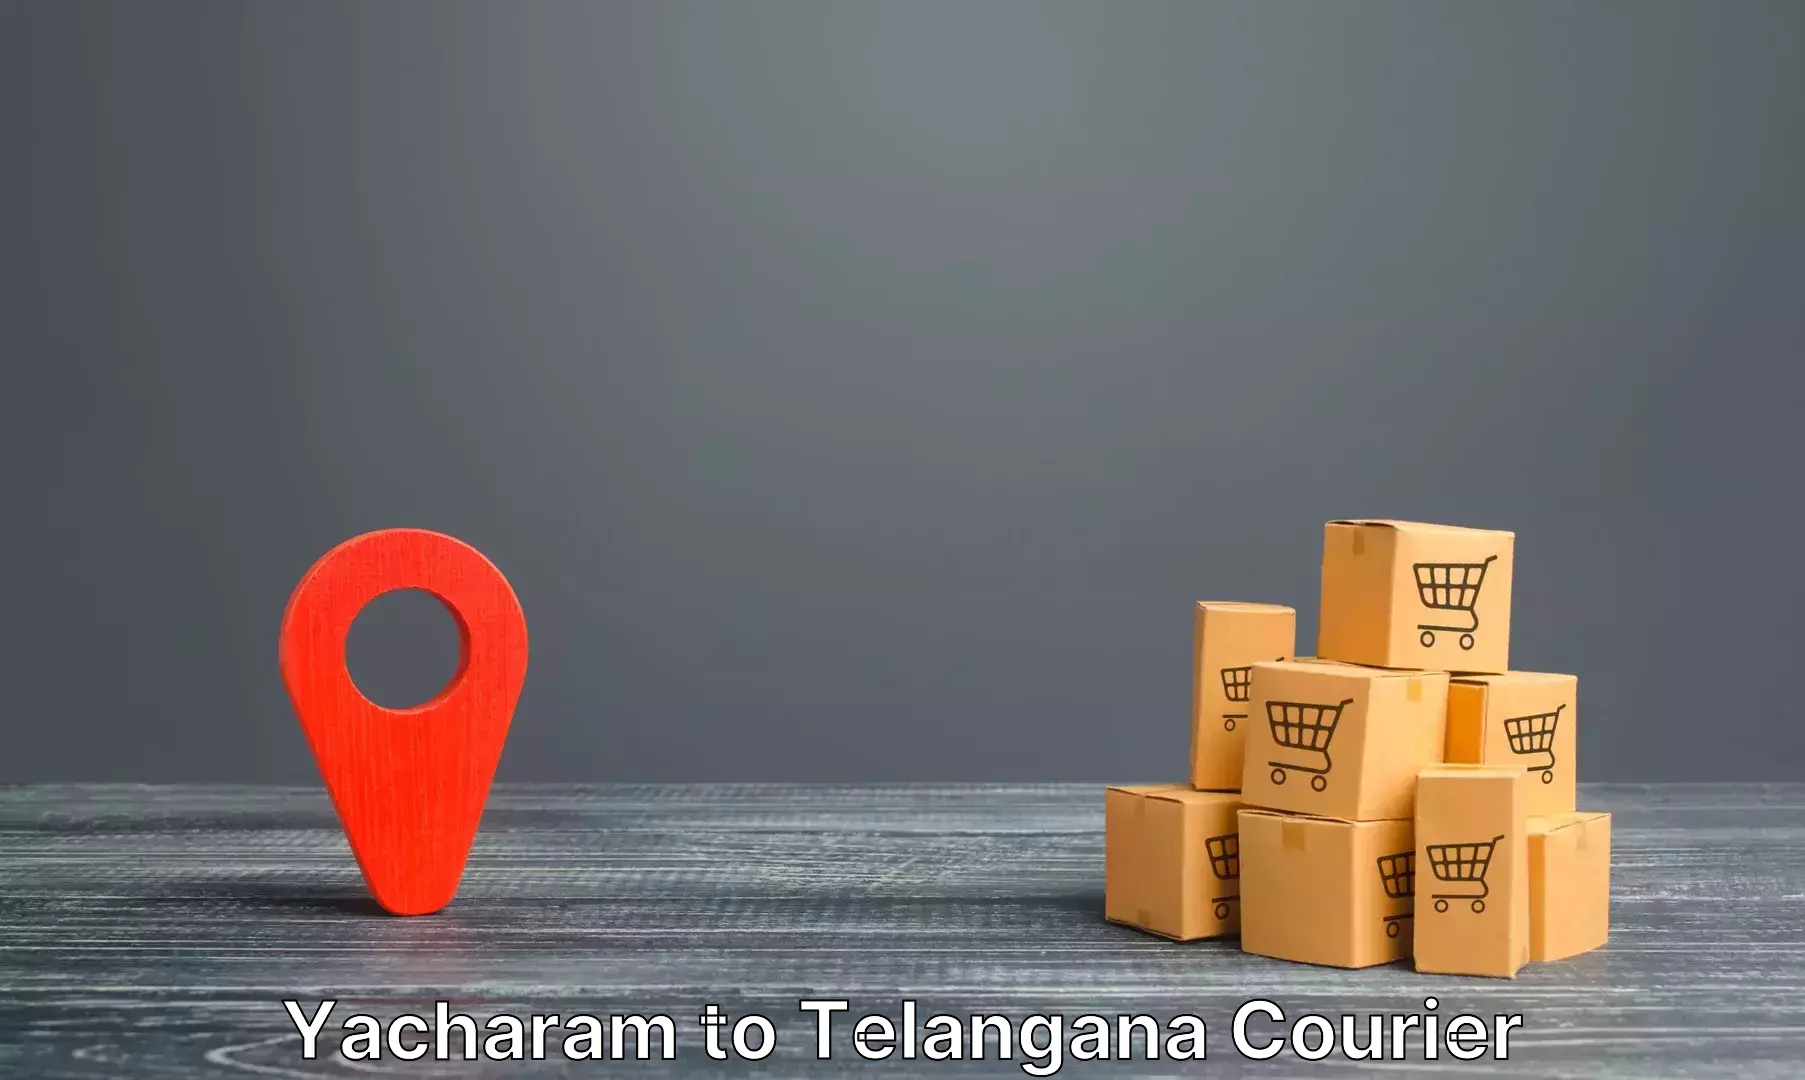 Luggage transport company Yacharam to Thirumalagiri